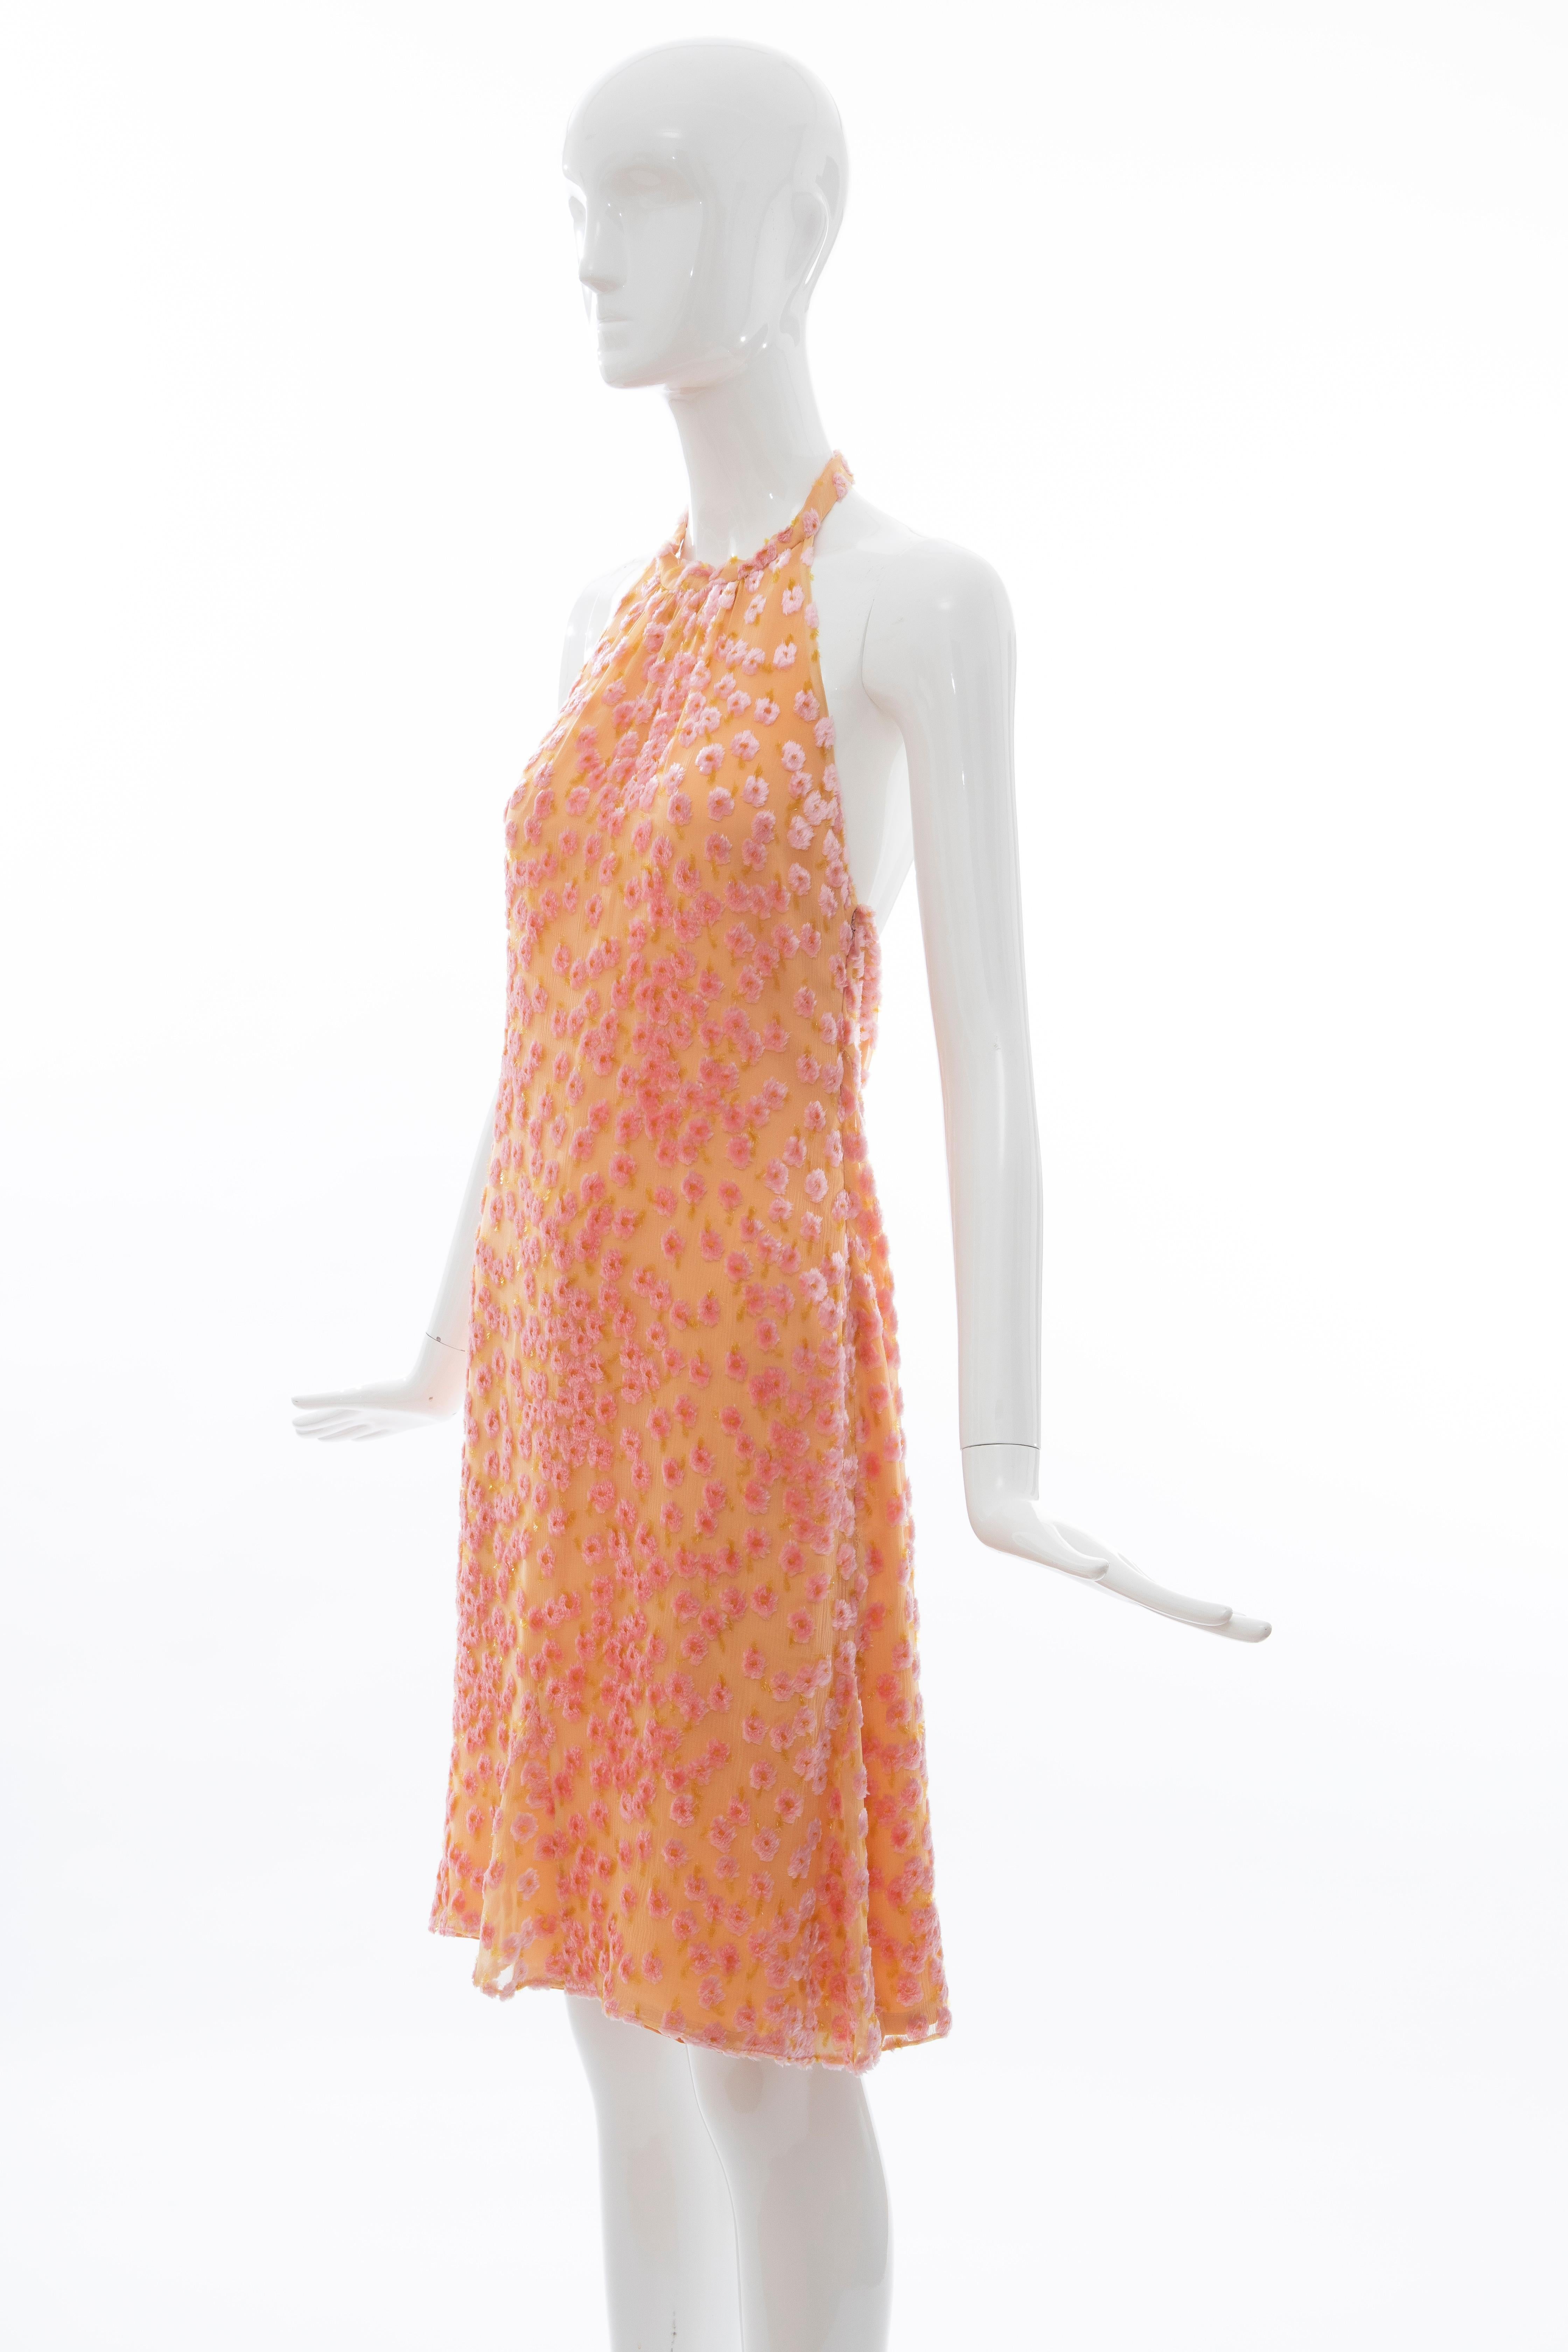 Chanel Tangerine & Pink Voided Silk Chiffon Velvet Halter Dress, Cruise 2001 For Sale 9